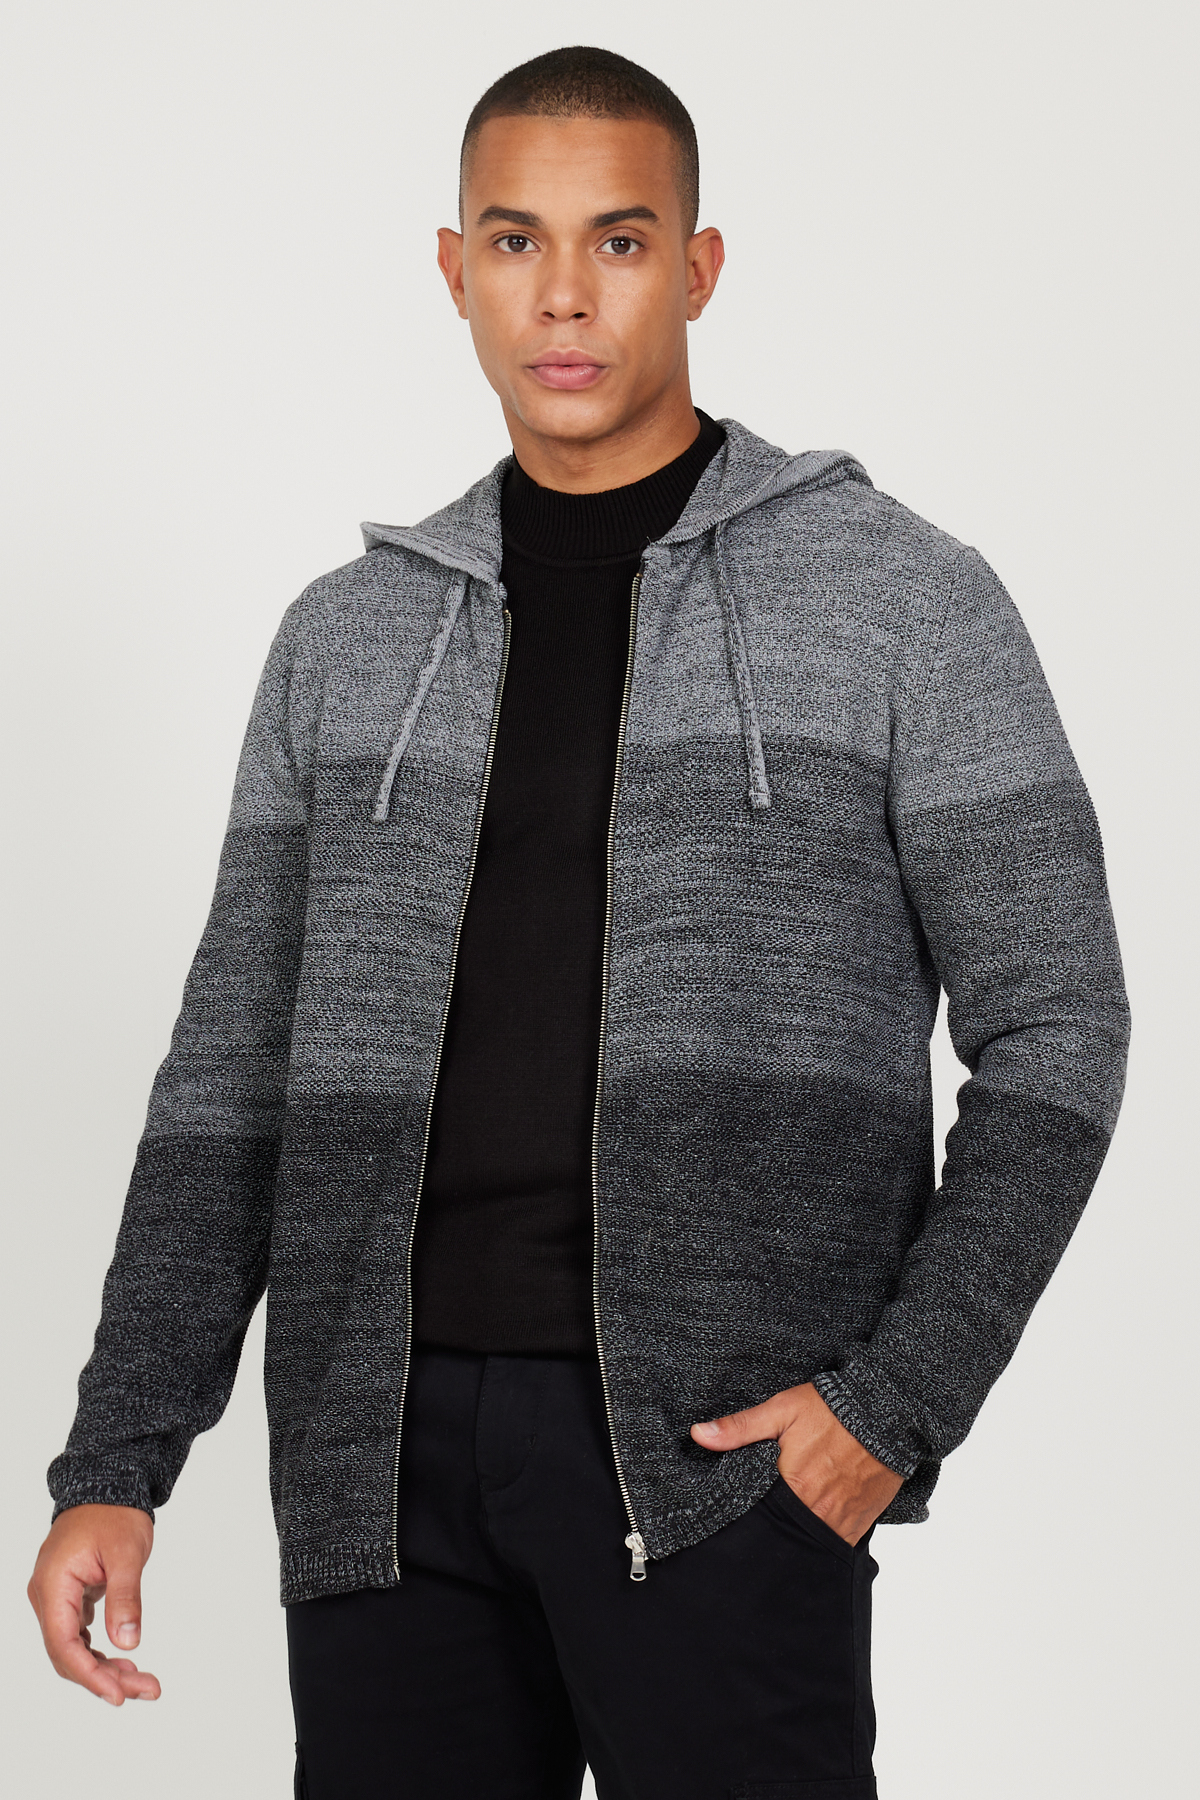 AC&Co / Altınyıldız Classics Men's Black-gray Standard Fit Regular Cut Hooded Patterned Knitwear Cardigan